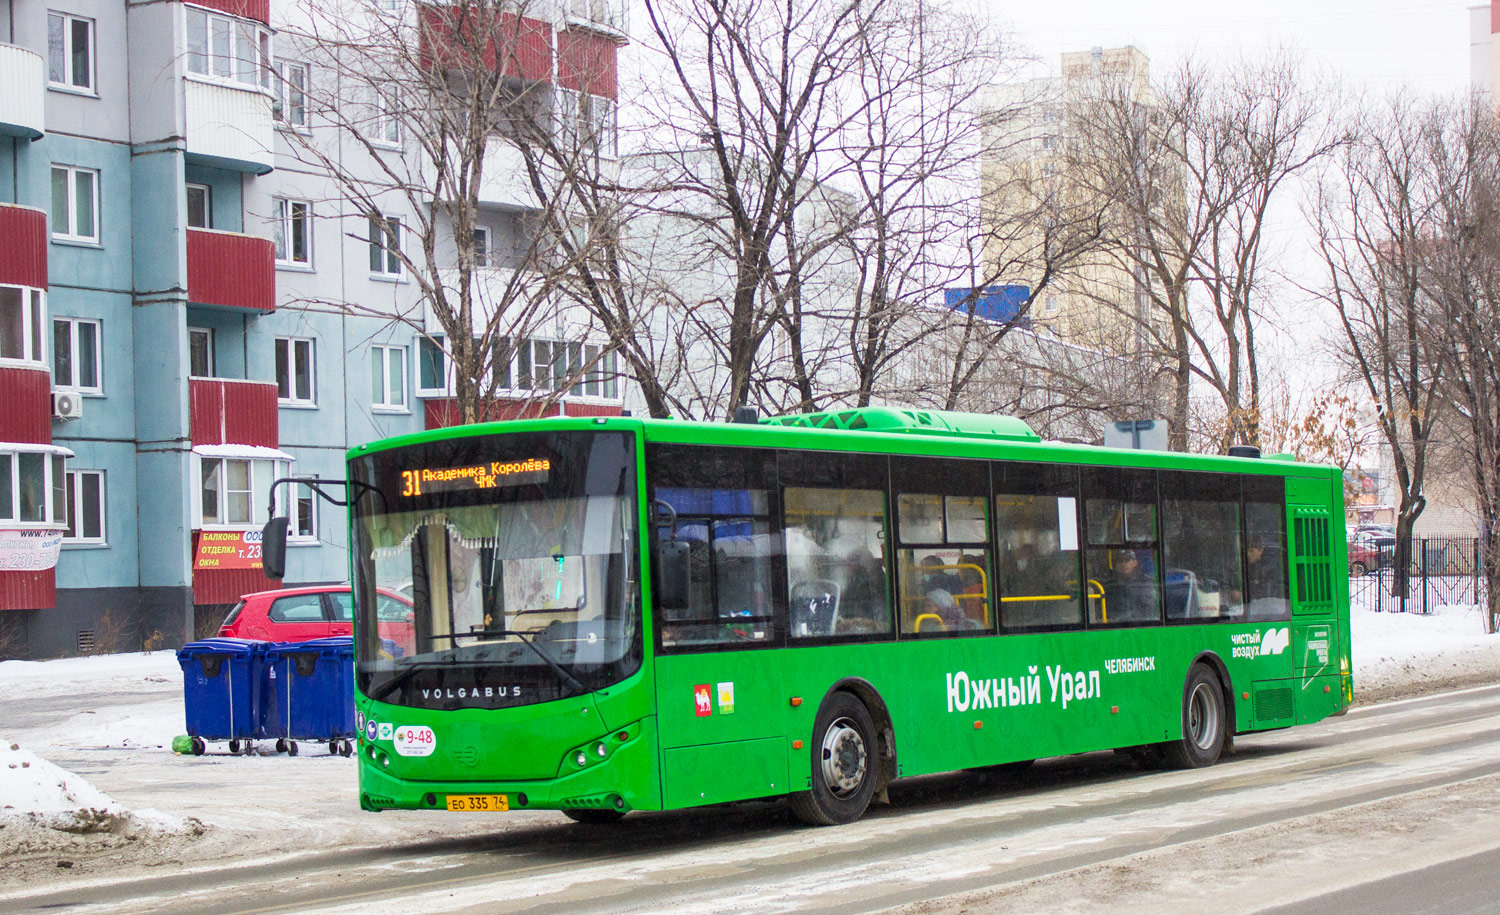 Chelyabinsk, Volgabus-5270.G2 (LNG) # 9-48